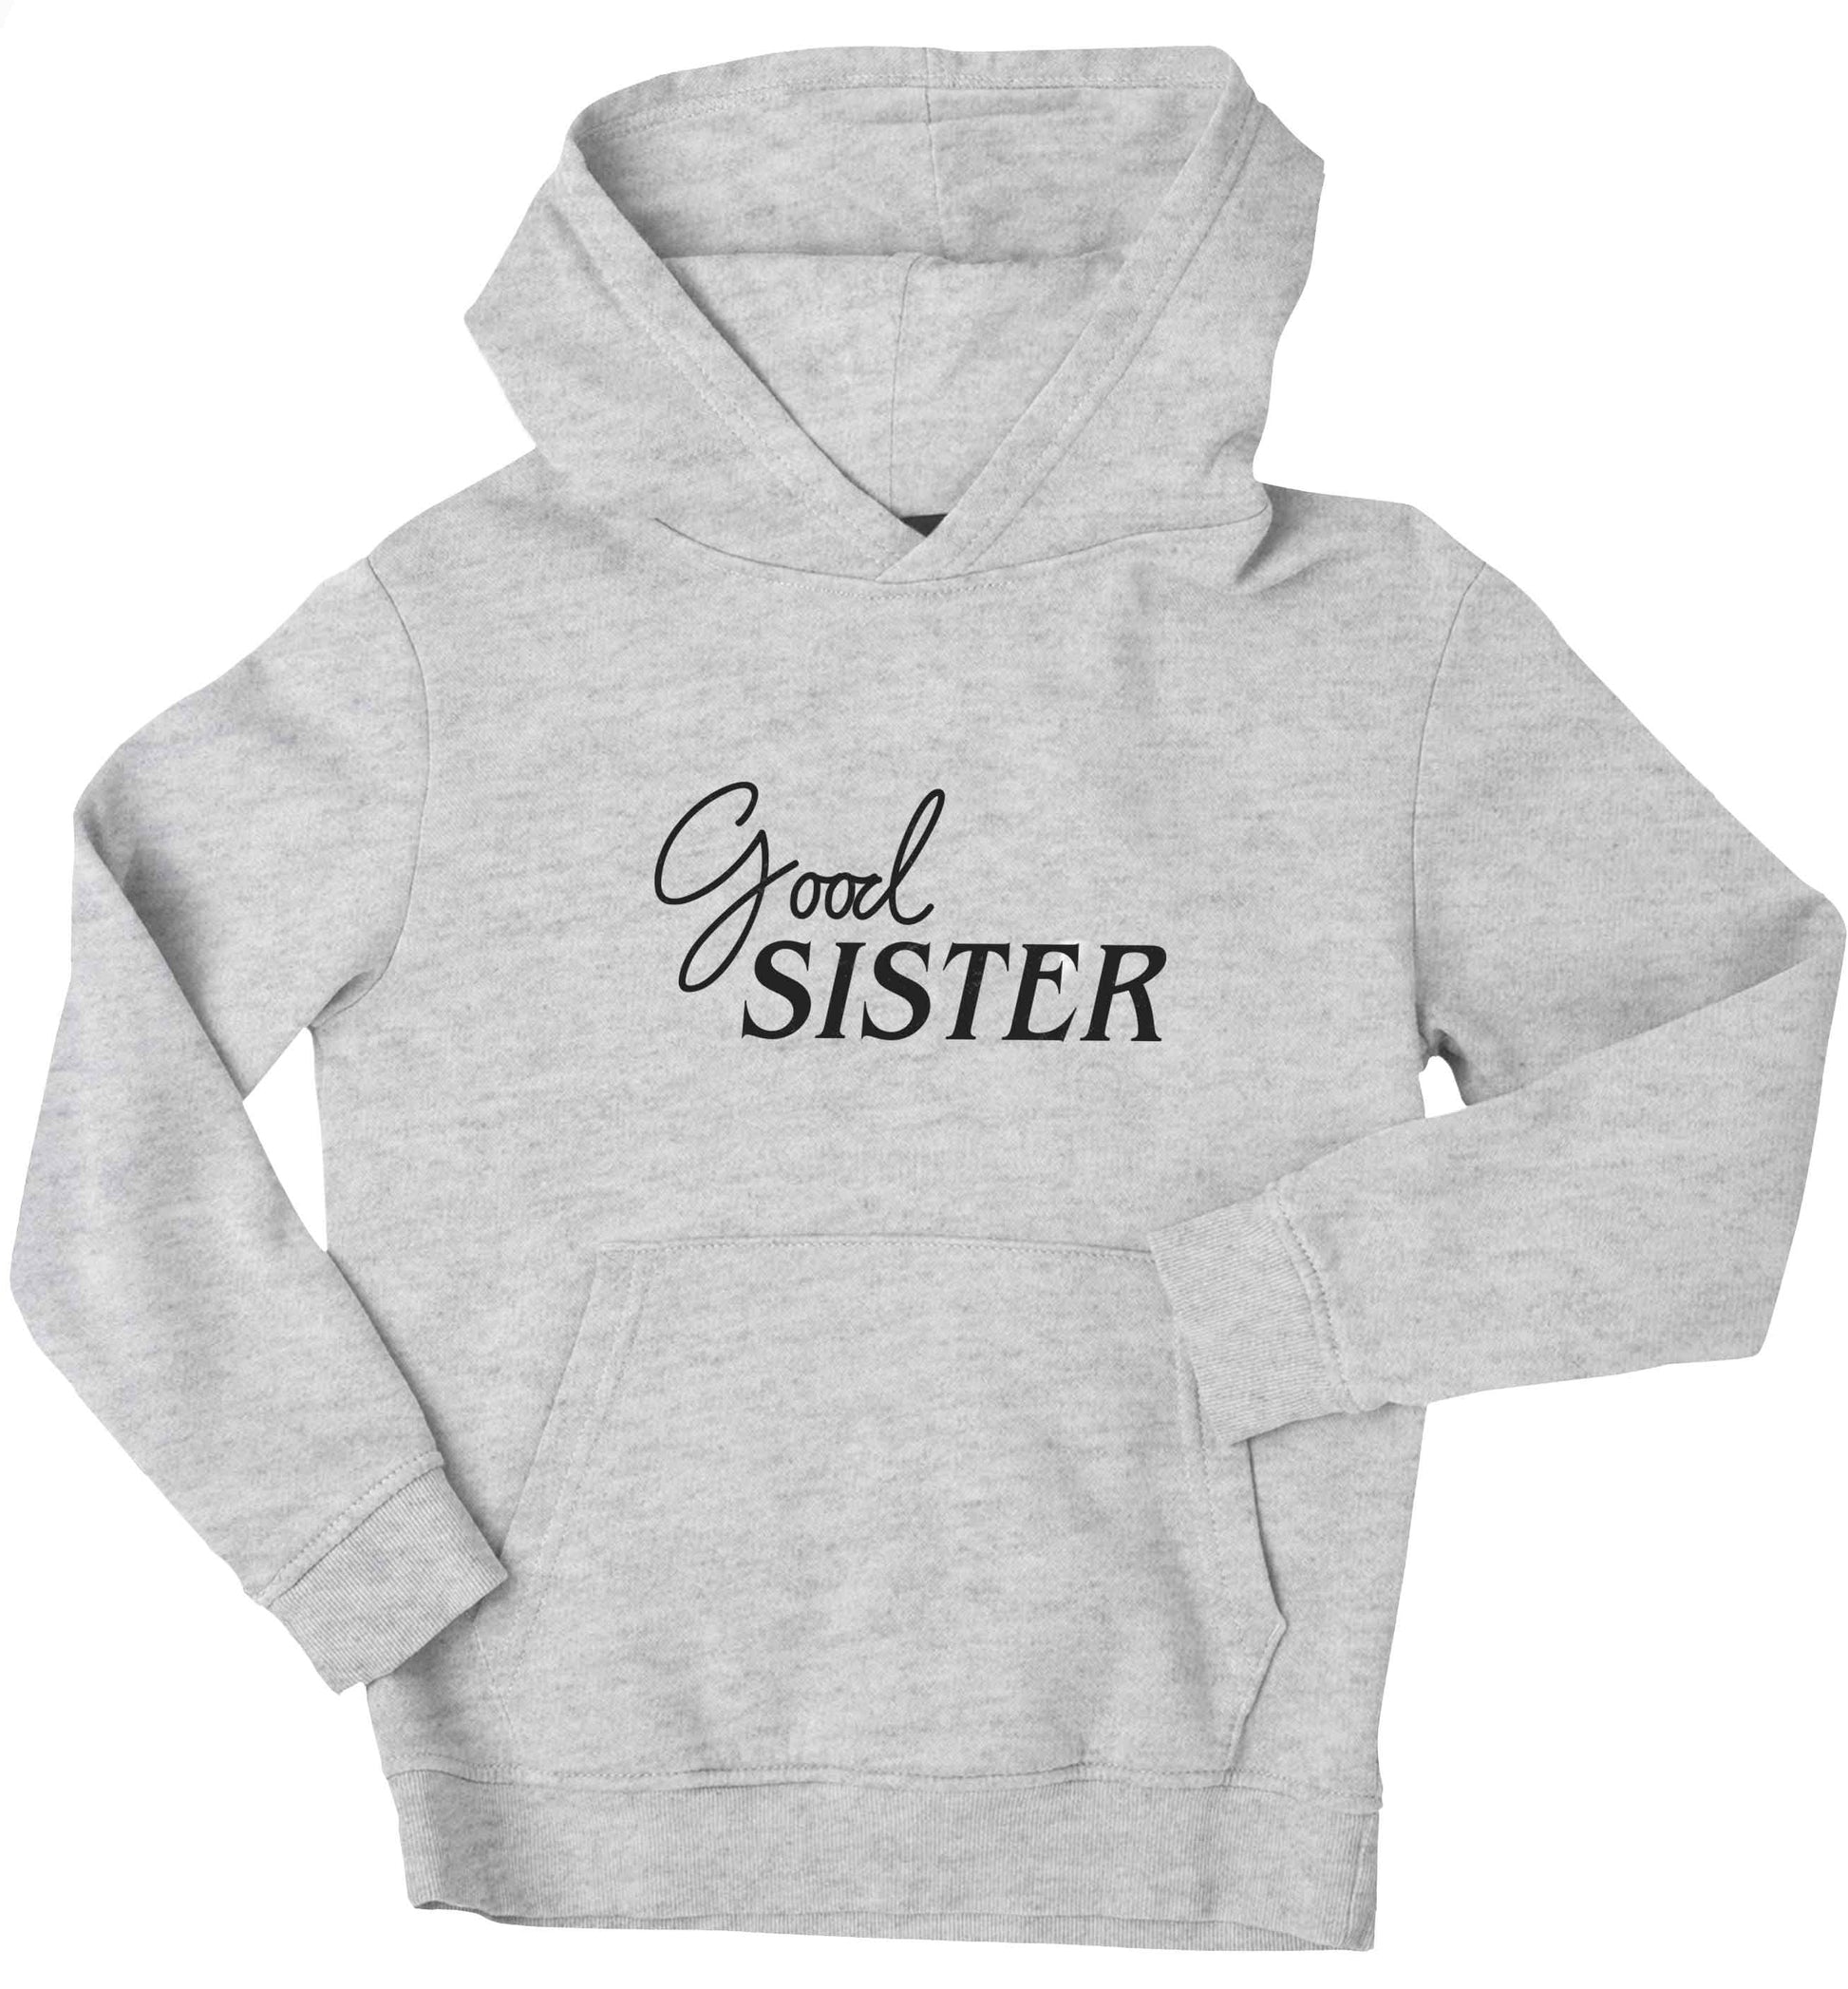 Good sister children's grey hoodie 12-13 Years